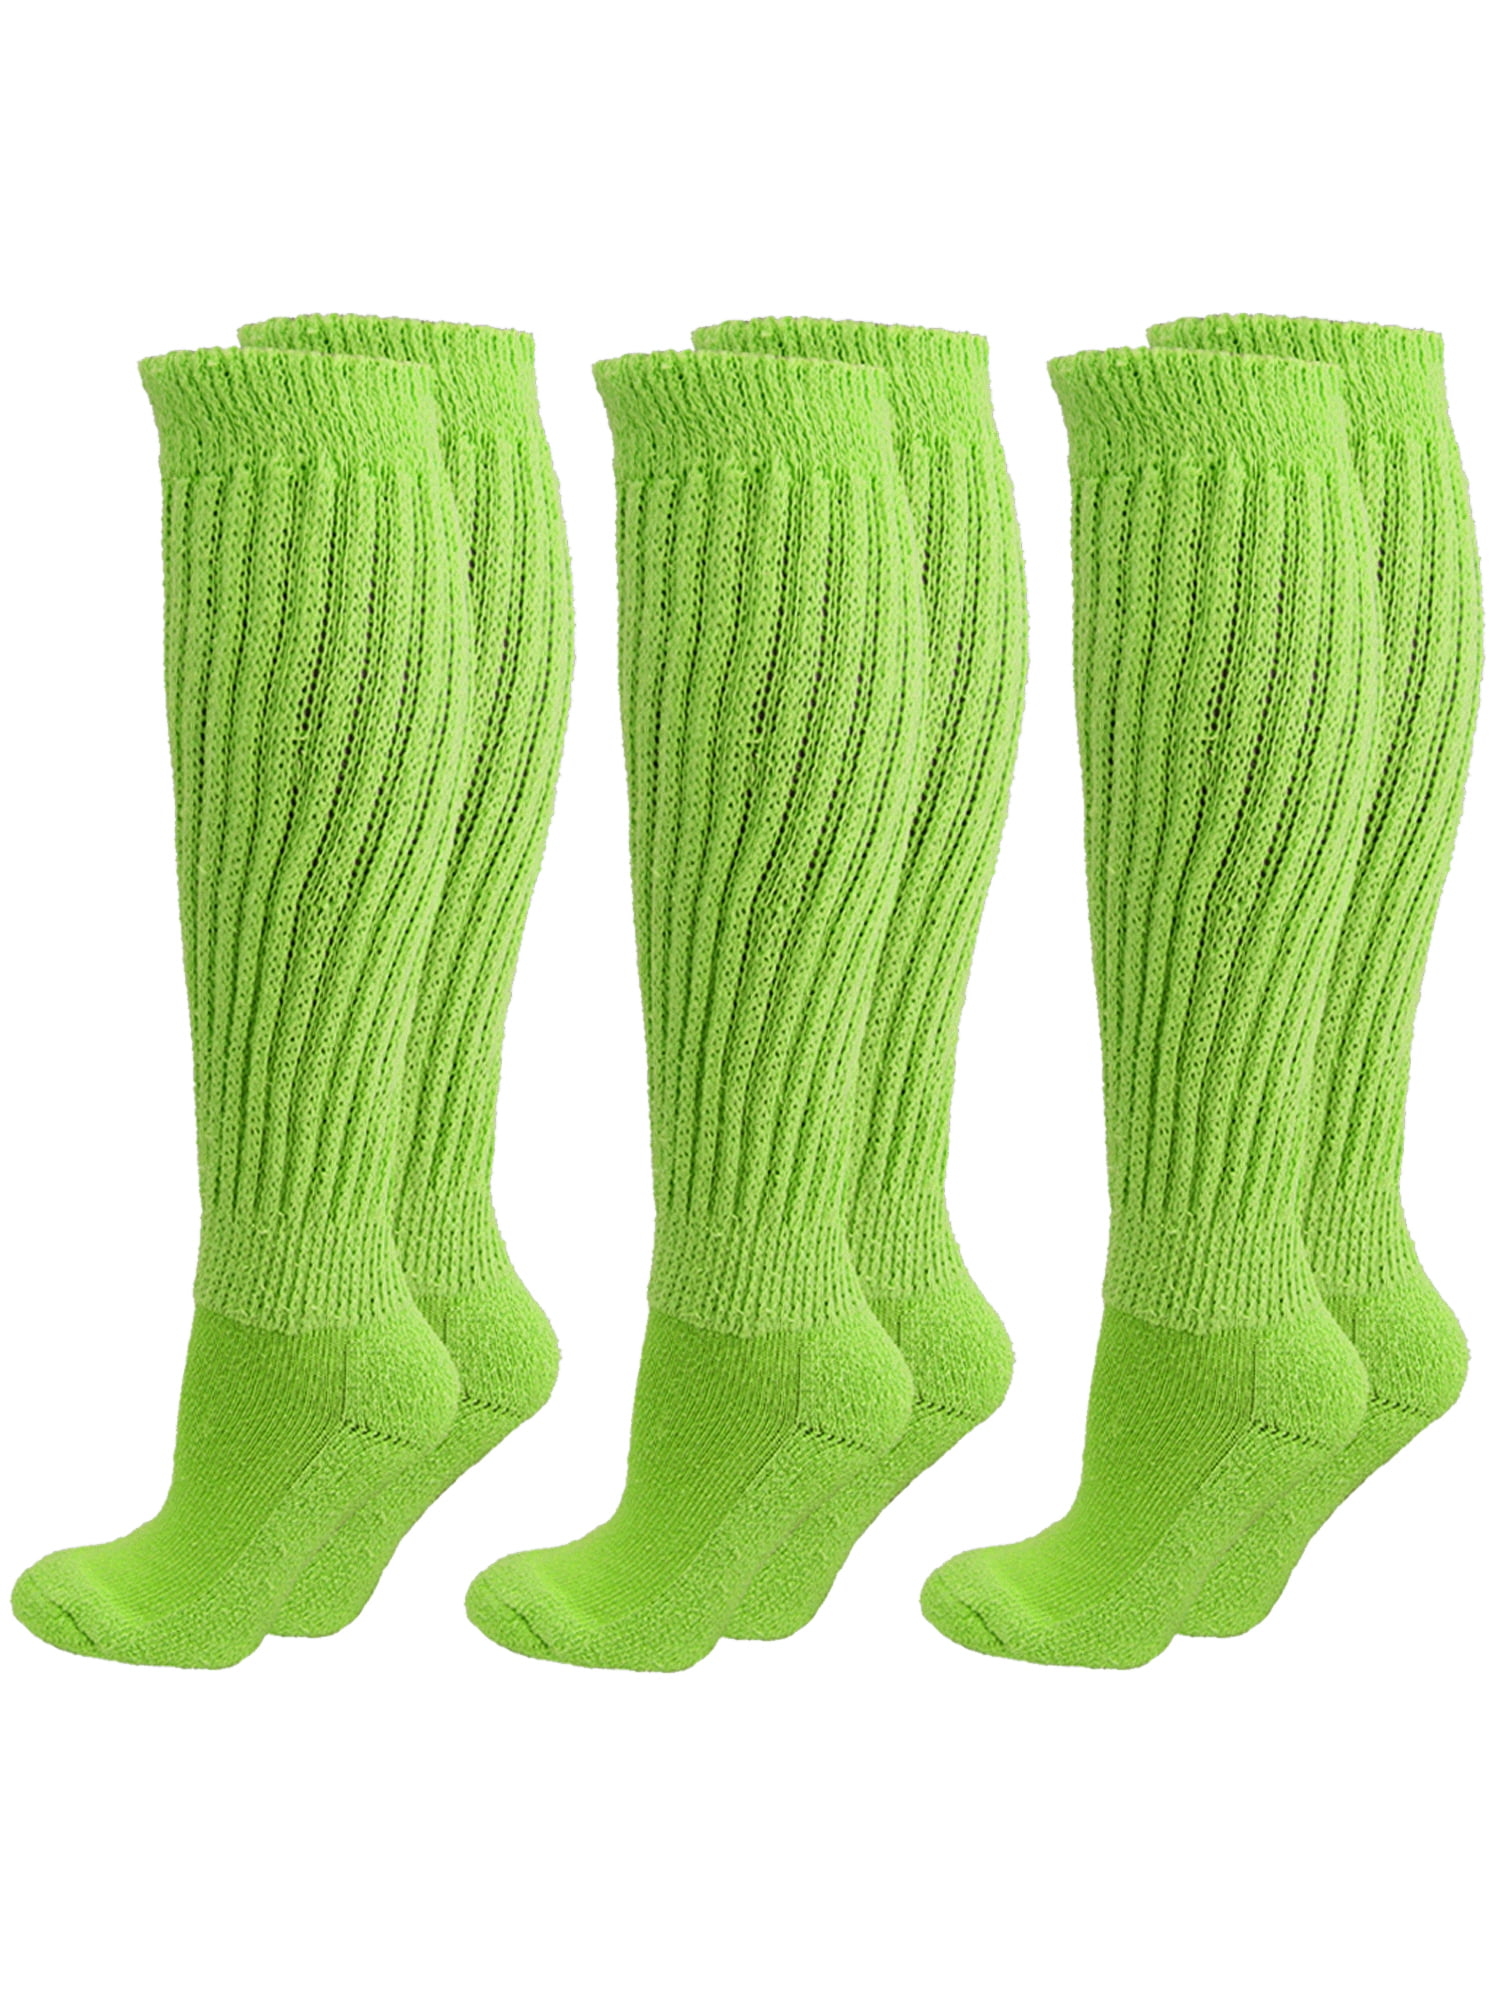 Slouch Socks For Women Retro Crew Socks Casual Cotton Ribbed Socks  3PACK/4PACK